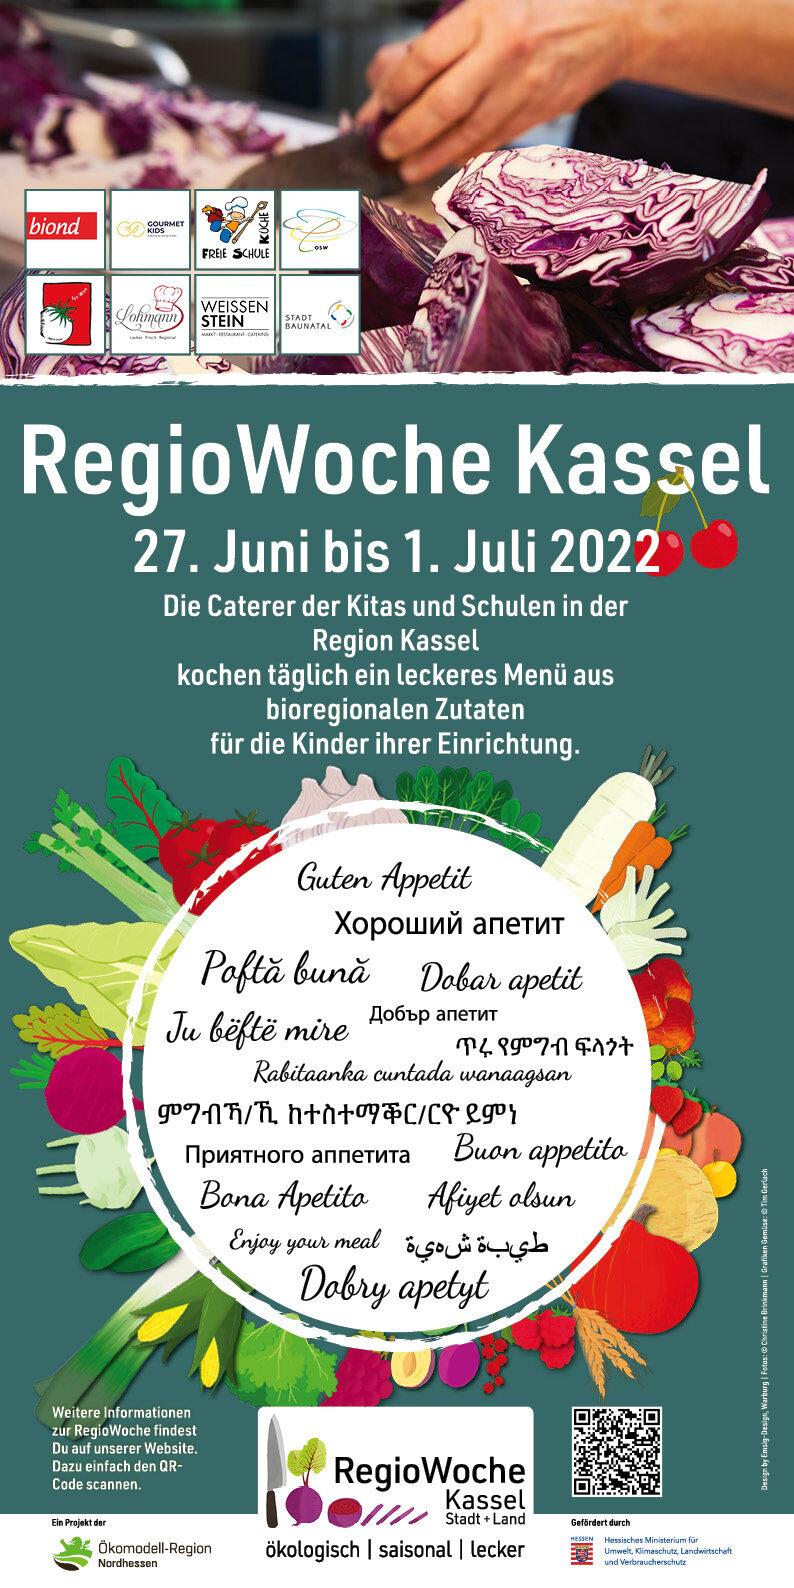 Plakat zur Regio-Woche Kassel, die vom 27. Juni bis zum 1. Juli 2022 stattfindet. Dem Plakat ist zu entnehmen, dass in der genannten Woche in den Kitas und Schulen der Region Kassel täglich ein Menü aus bioregionalen Zutaten gekocht wird.